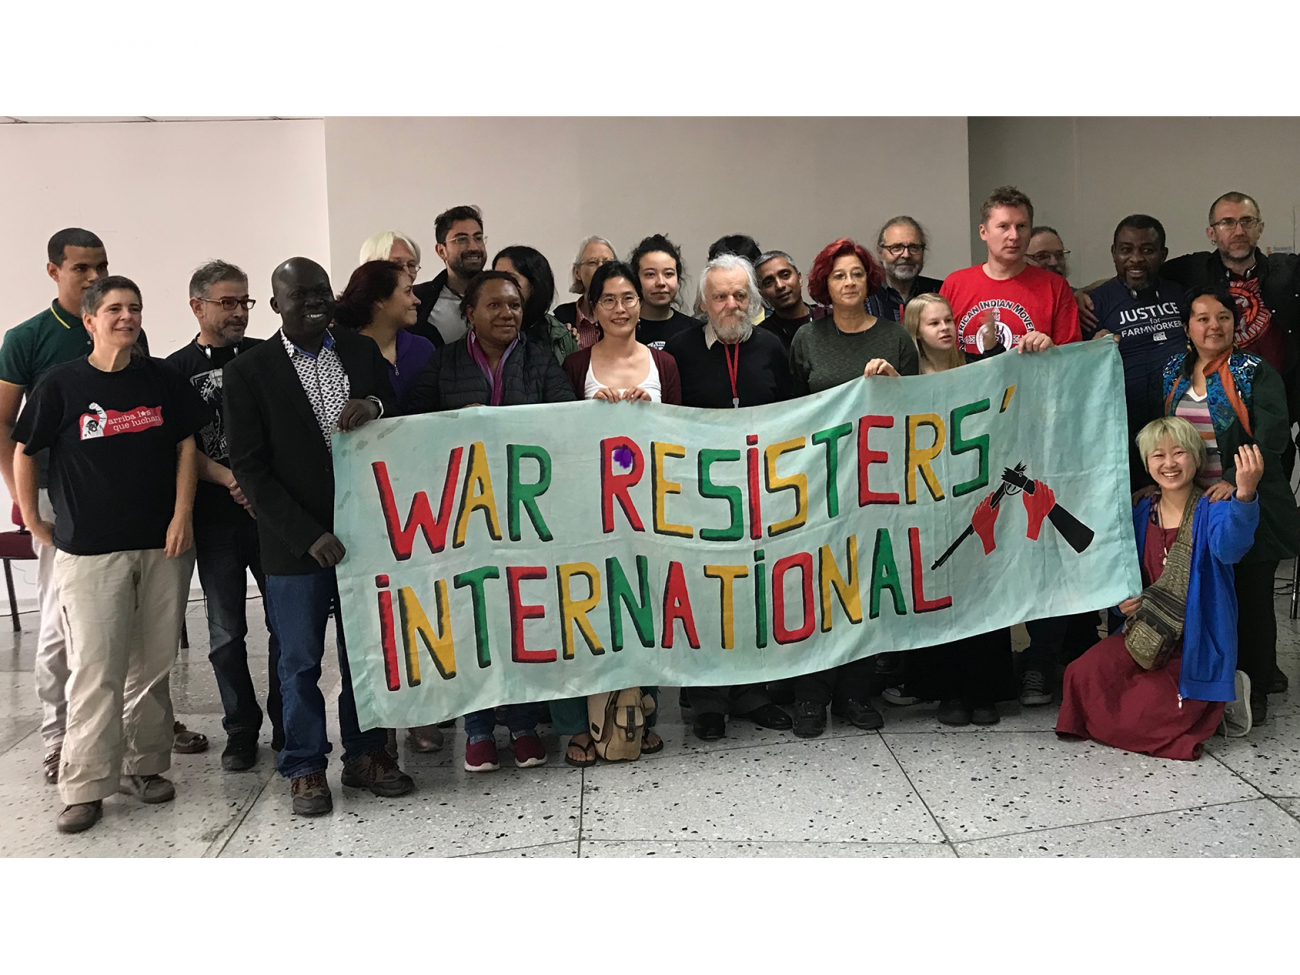 Dos docenas de personas se paran detrás de una pancarta que dice "Internacional de Resistentes a la Guerra"